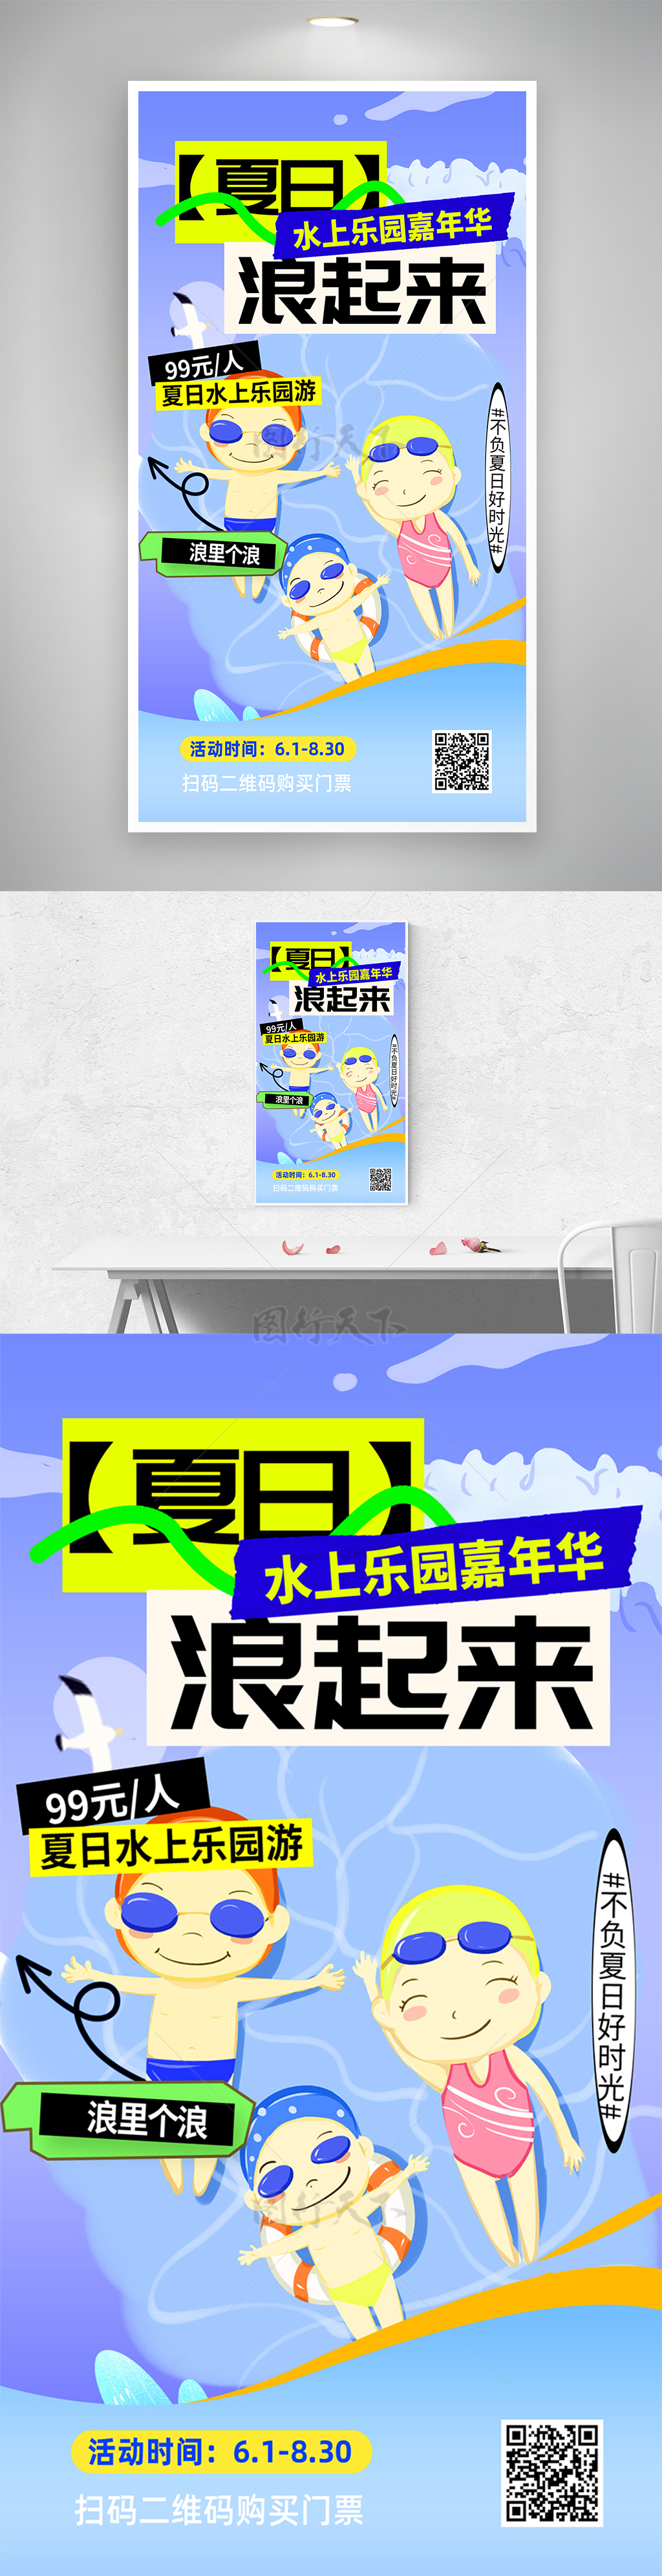 夏日水上乐园嘉年华活动促销宣传海报